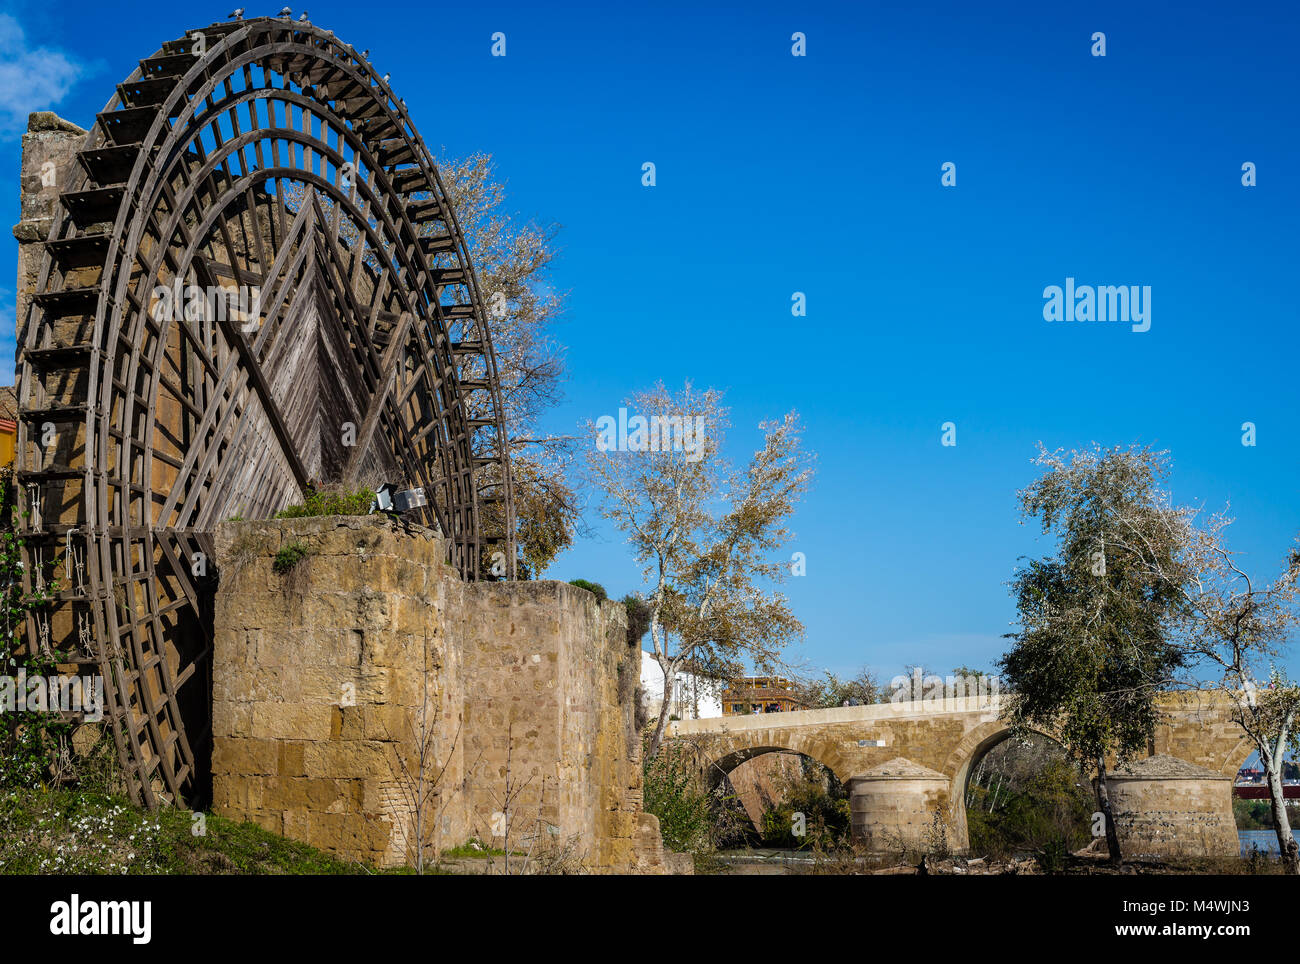 Die römische Brücke und die mittelalterliche Mühle am Ufer des Flusses Guadaquivir in Cordoba, Andalusien, Spanien. Stockfoto